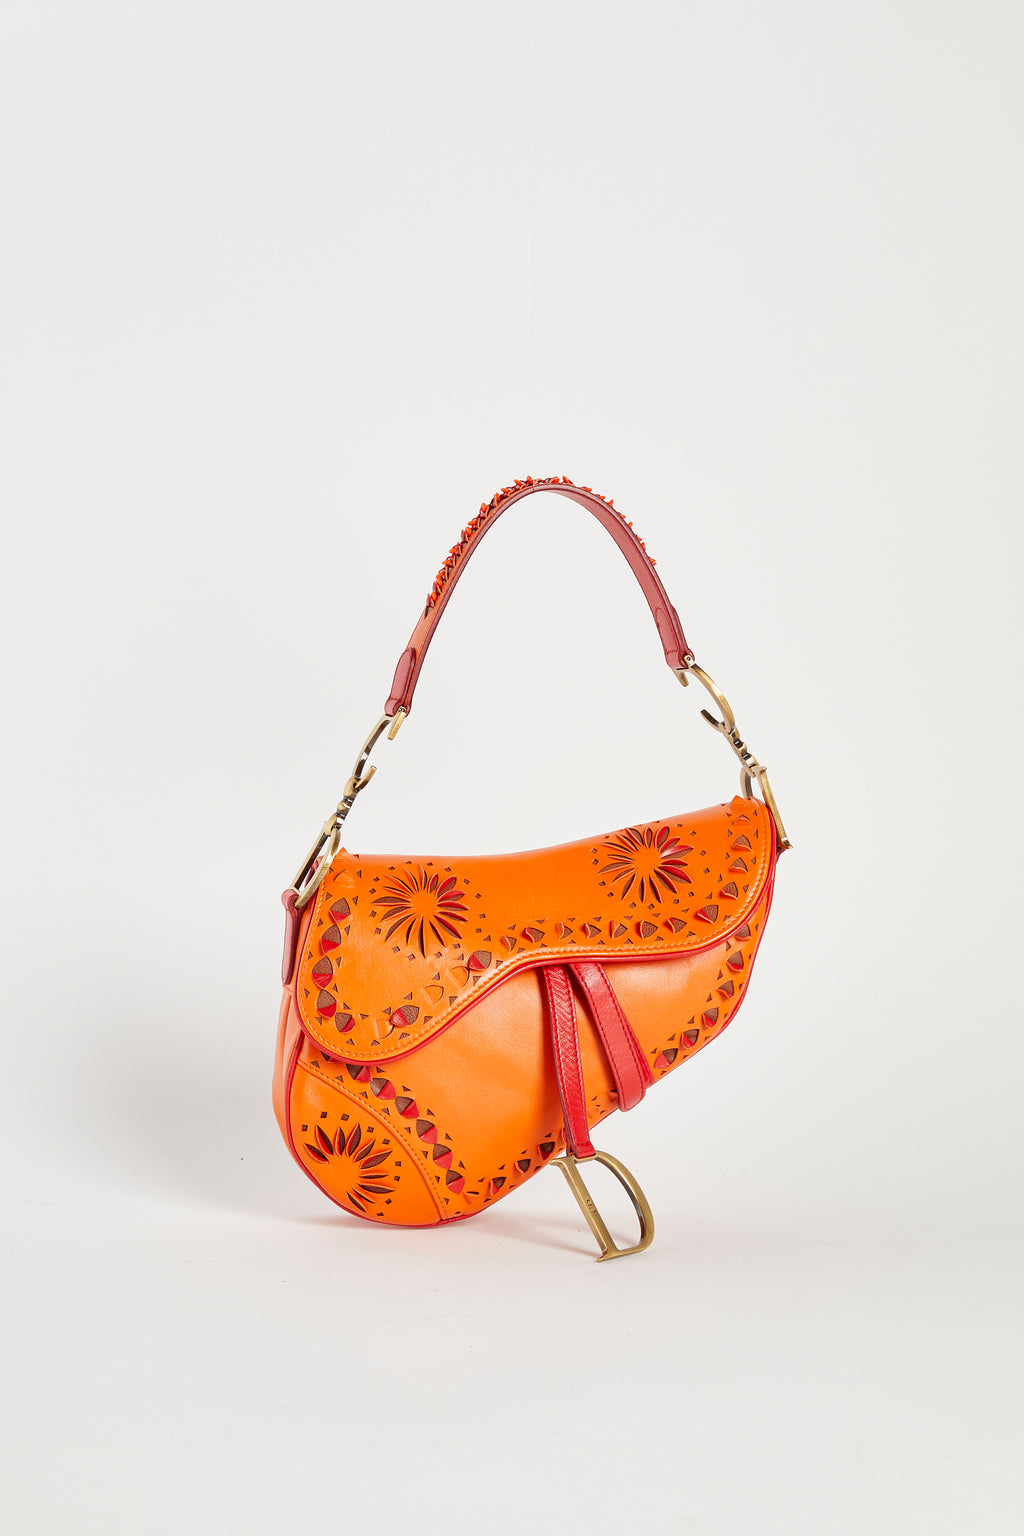 LIMITED EDITION Christian Dior Orange Laser Cut Saddle Bag